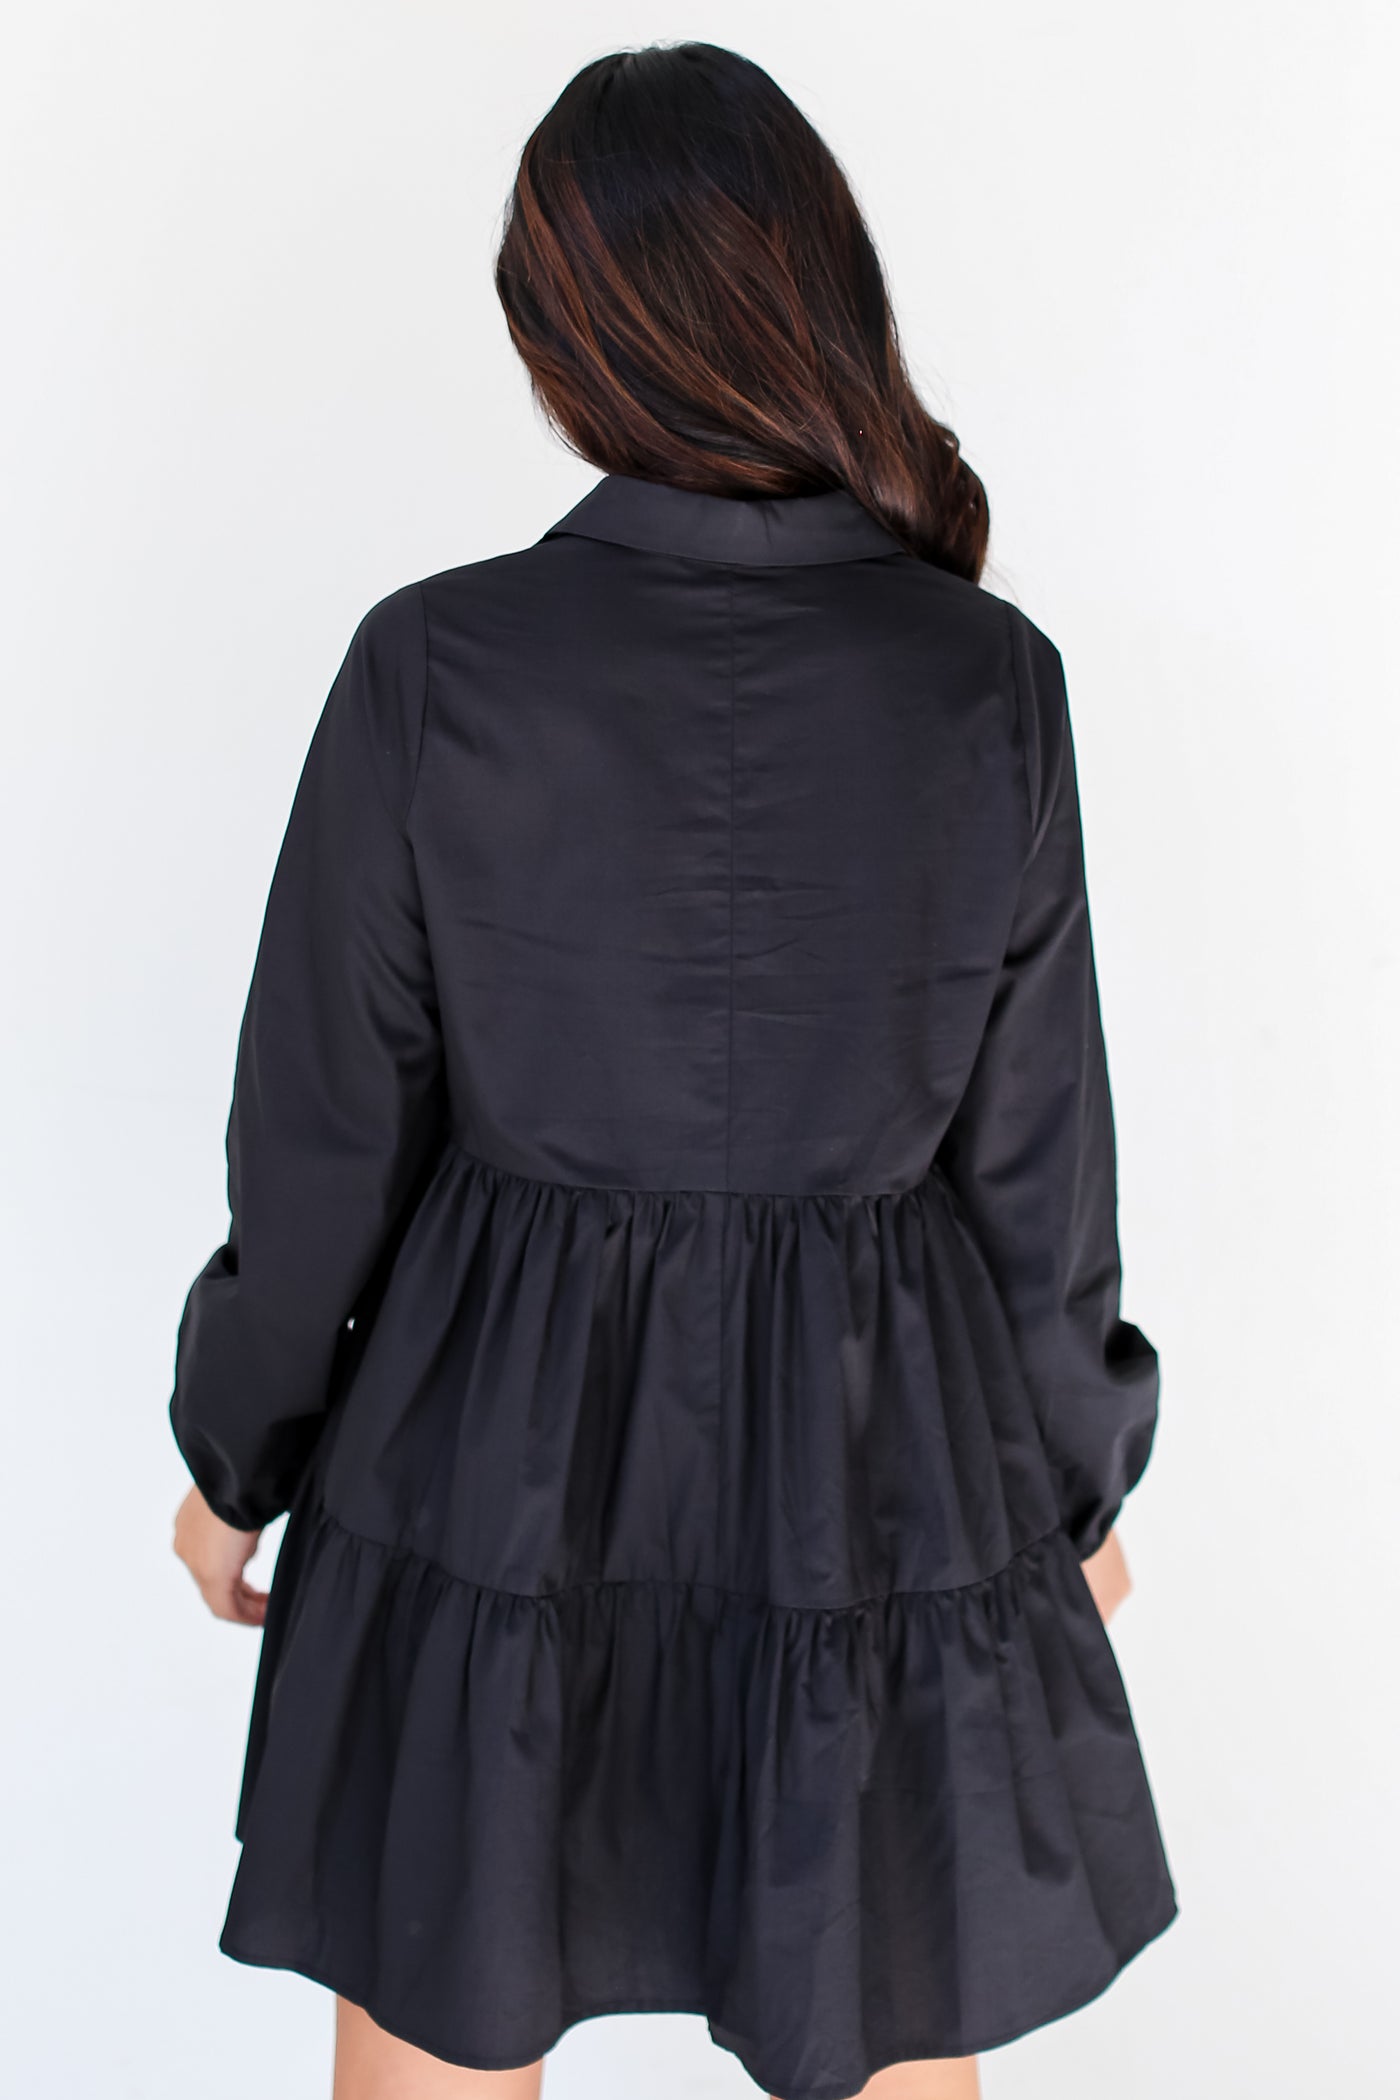 black Tiered Mini Dress back view